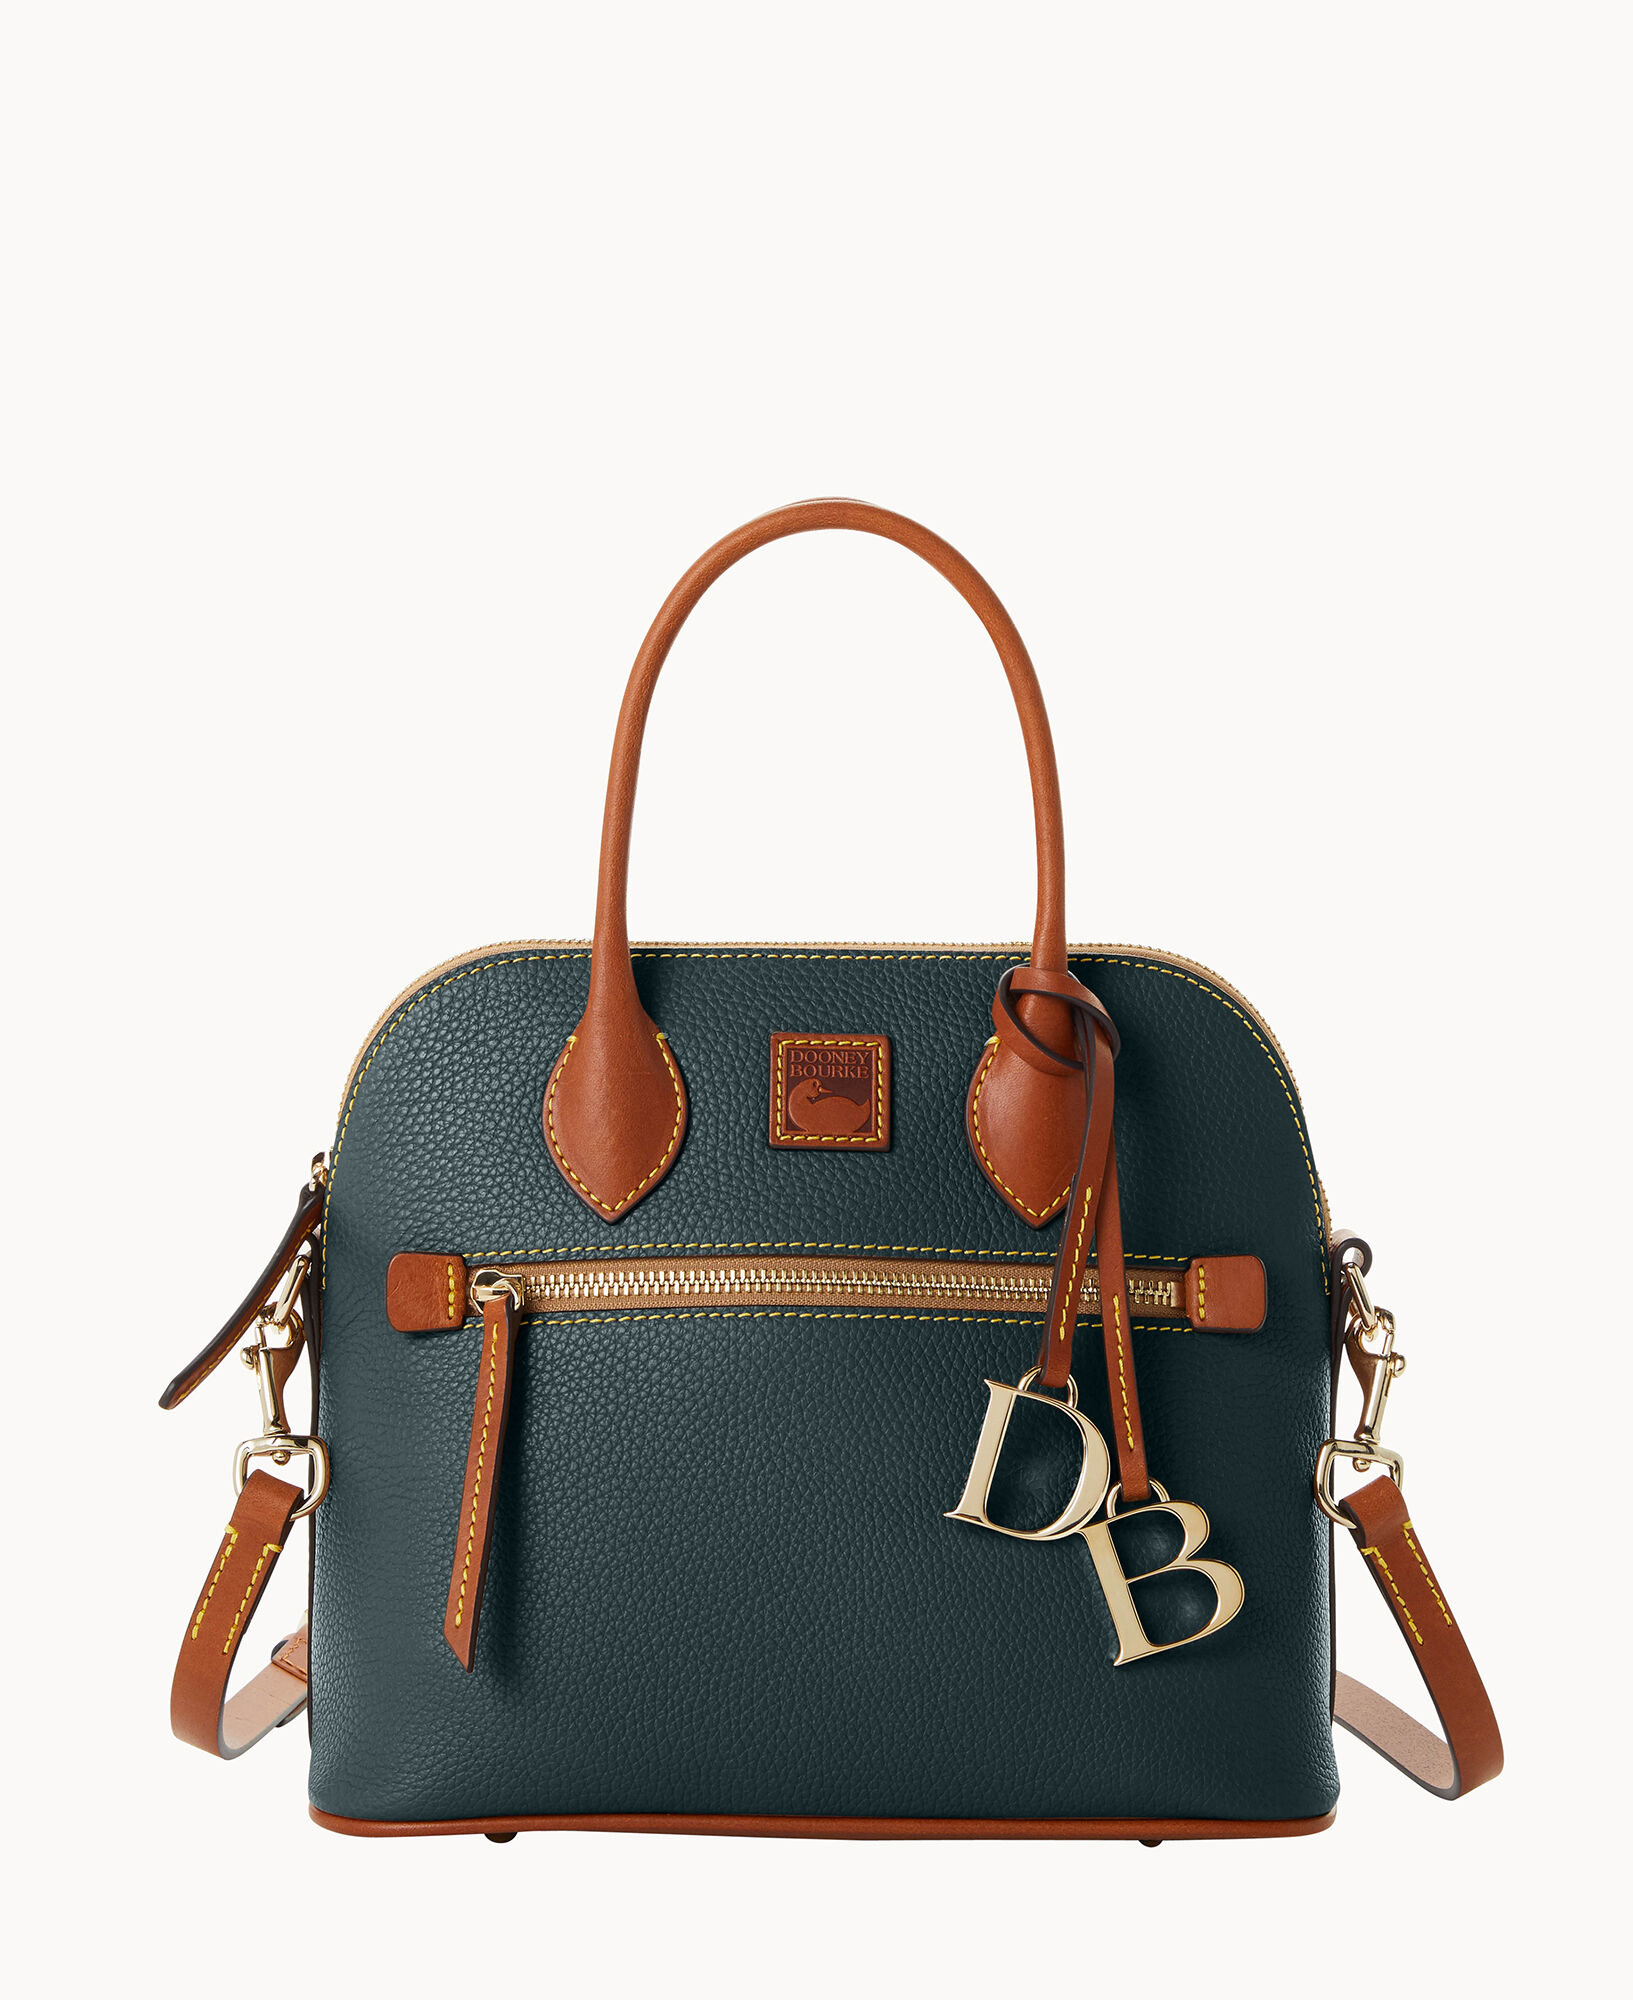 Dooney & Bourke Dark Brown Leather Satchel Bag